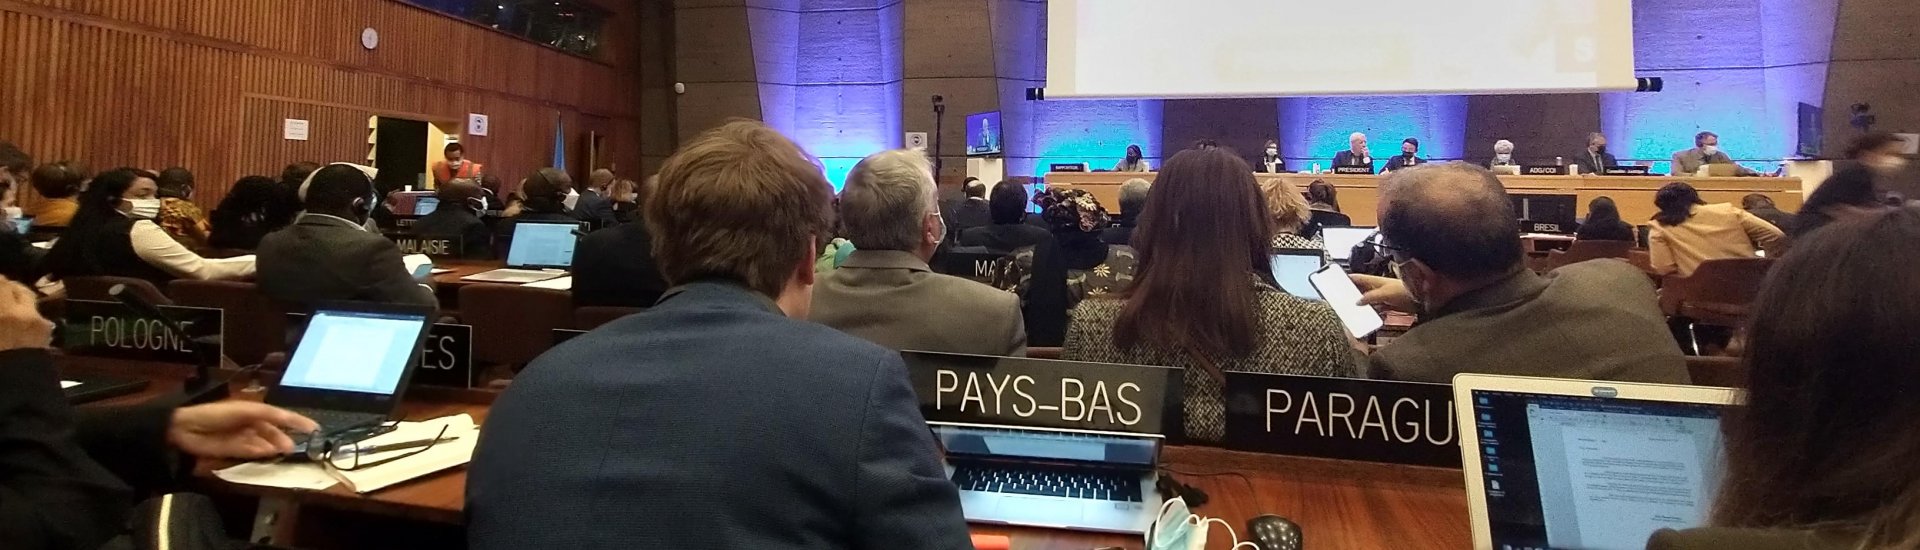 De behandeling van de Aanbevelingen bij Unesco in Parijs.